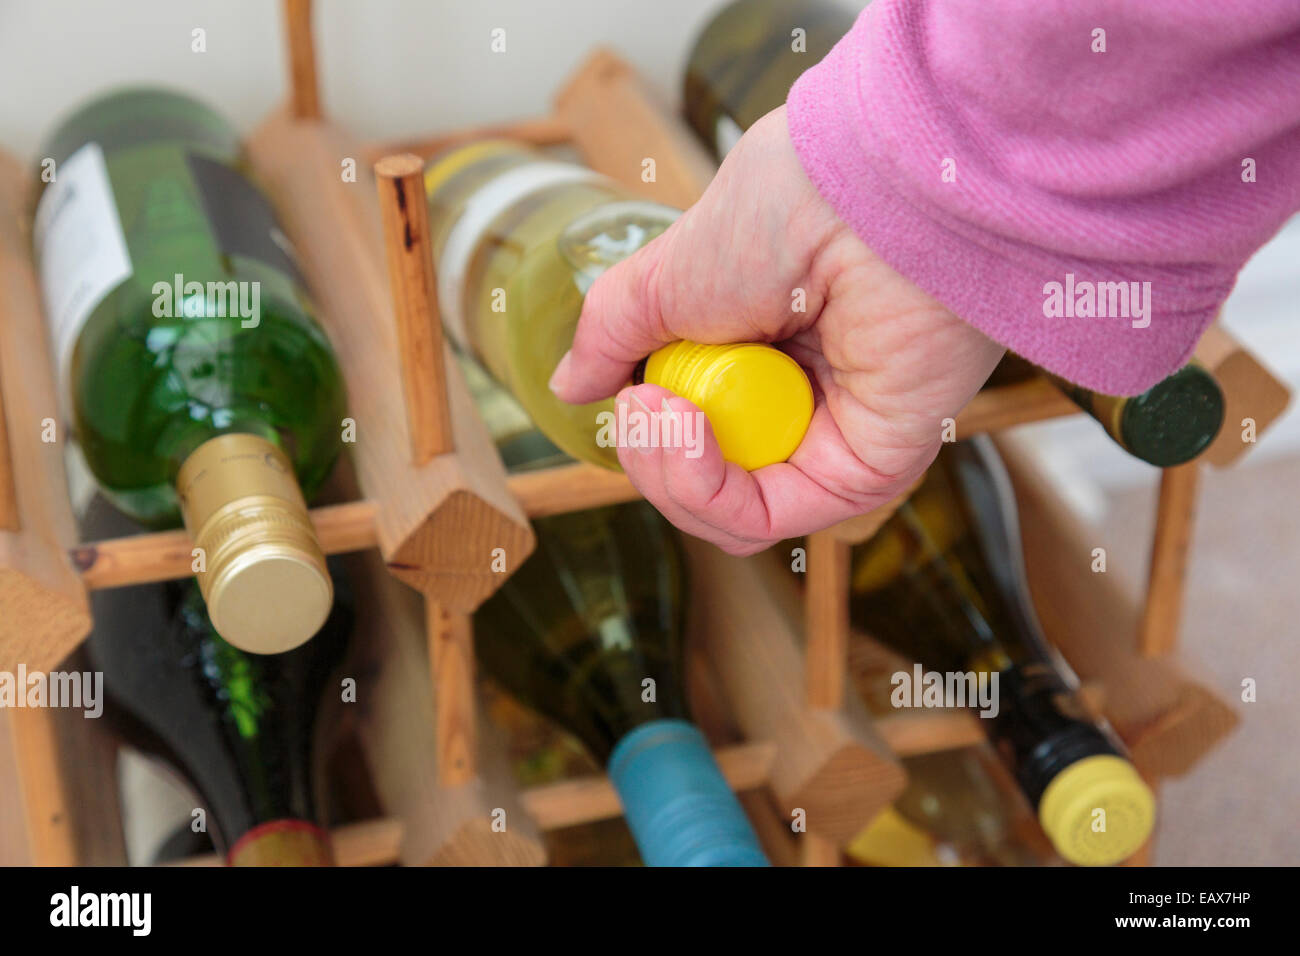 Scène de tous les jours où une femme choisit une bouteille de vin blanc à boire à partir d'une cave à vin de différents vins à la maison. Concept de style de vie. Angleterre Royaume-Uni Grande-Bretagne Banque D'Images